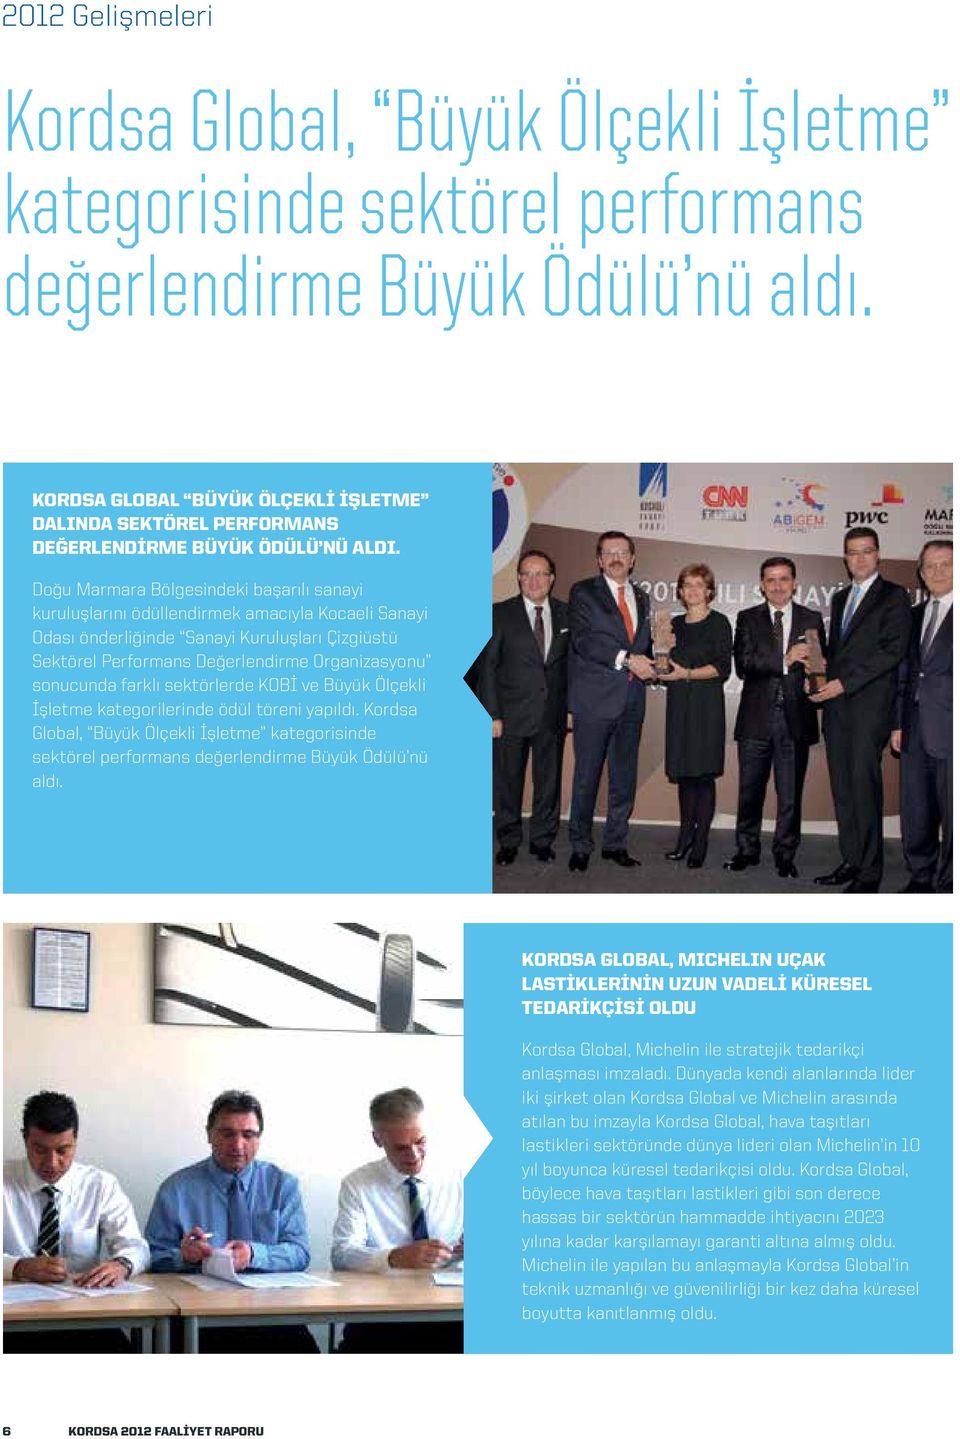 Doğu Marmara Bölgesindeki başarılı sanayi kuruluşlarını ödüllendirmek amacıyla Kocaeli Sanayi Odası önderliğinde Sanayi Kuruluşları Çizgiüstü Sektörel Performans Değerlendirme Organizasyonu sonucunda